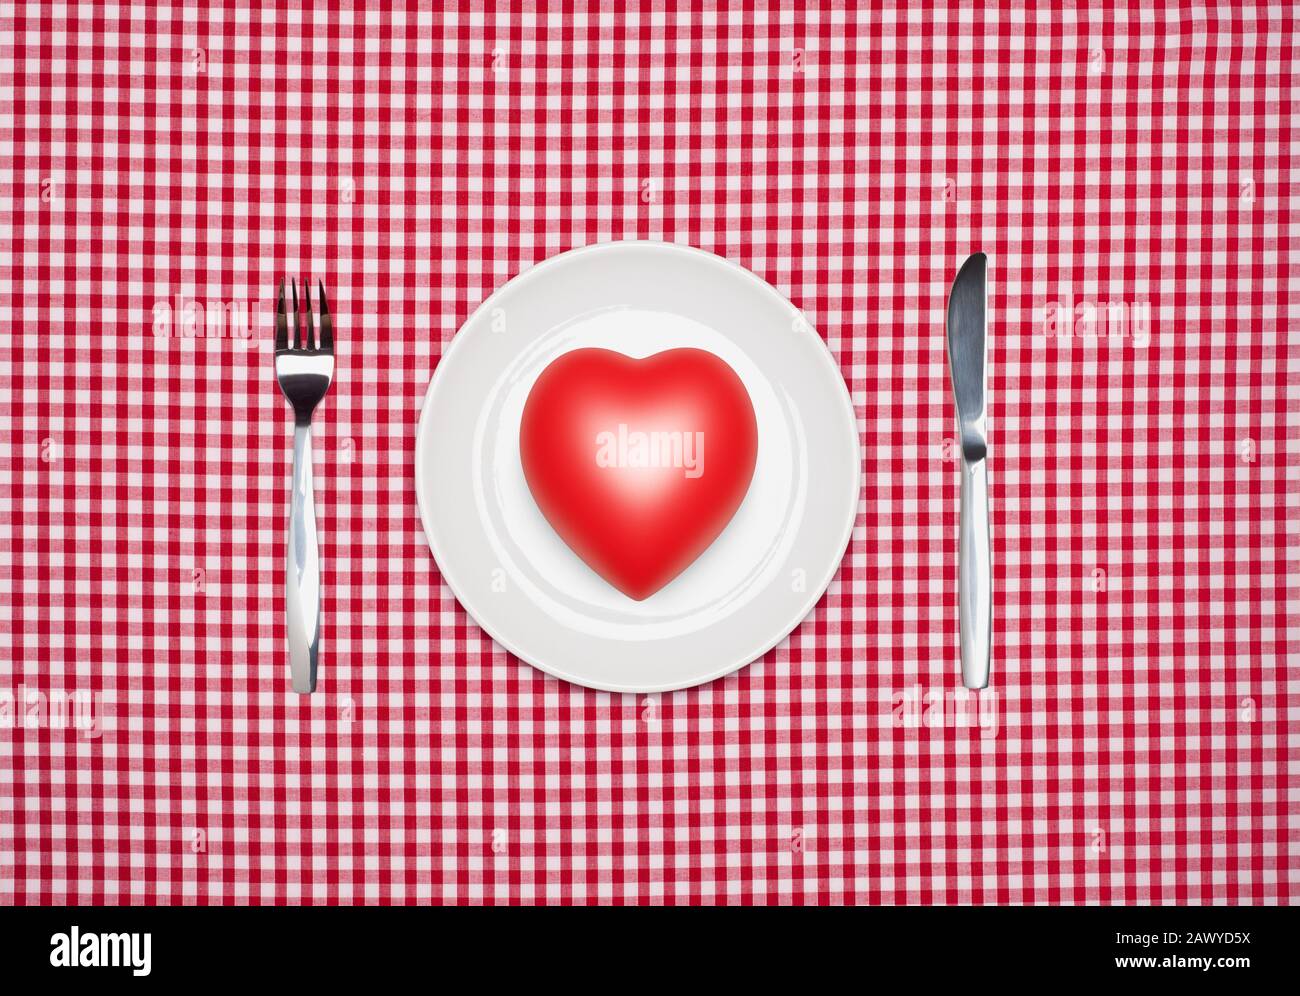 Concept de saine alimentation, coeur rouge sur une plaque ronde blanche avec couteau et fourchette d'en haut sur une nappe Vichy rouge Banque D'Images